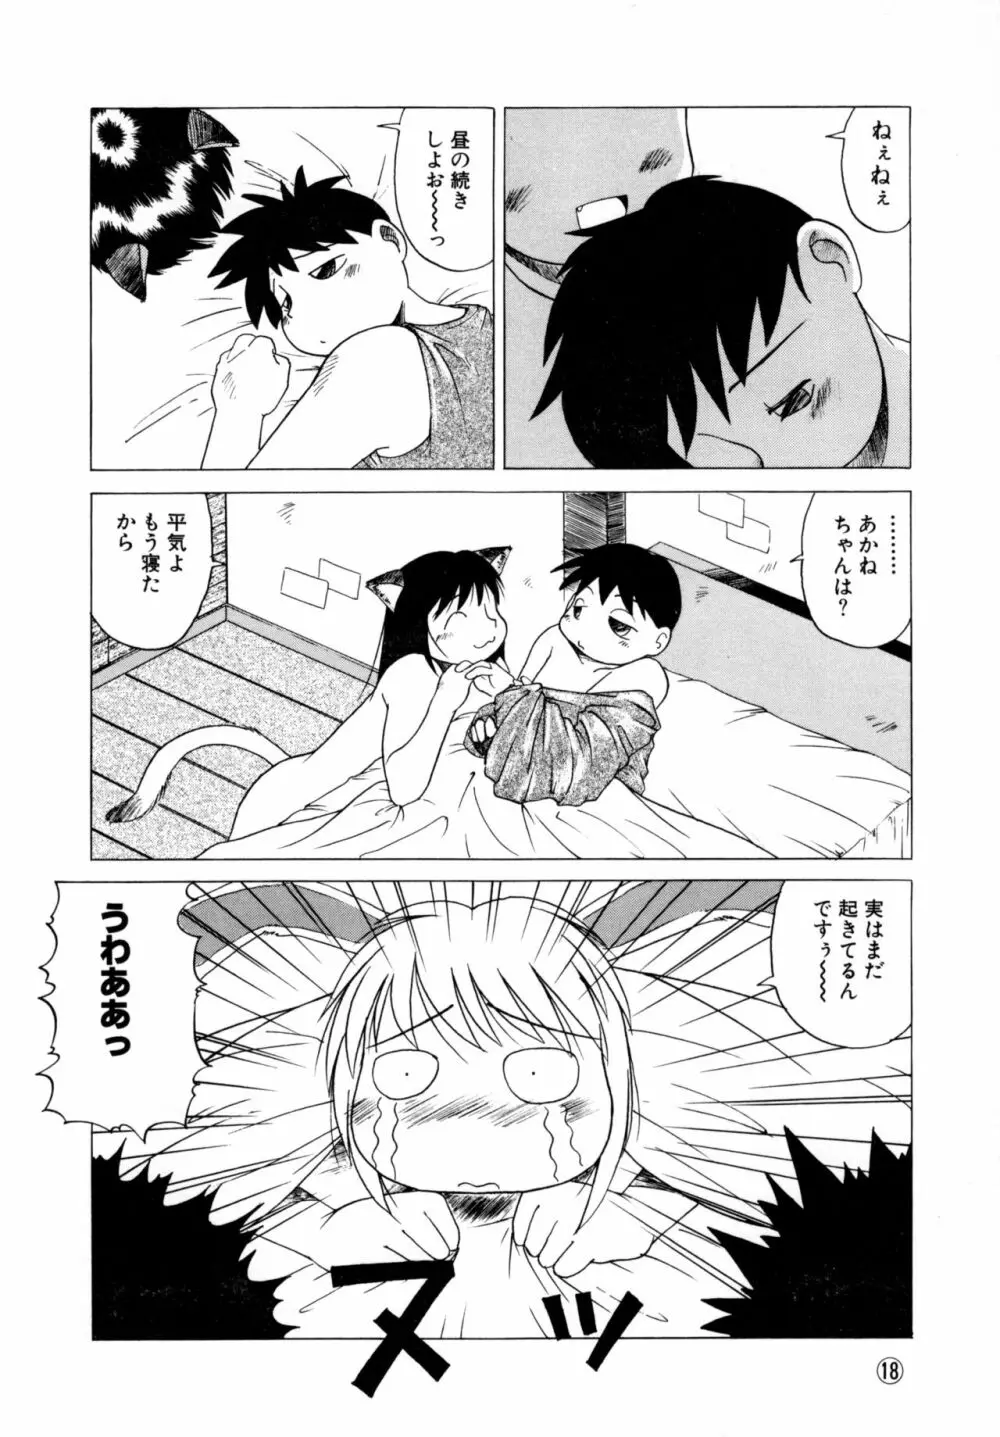 COMICねね No.6 21ページ